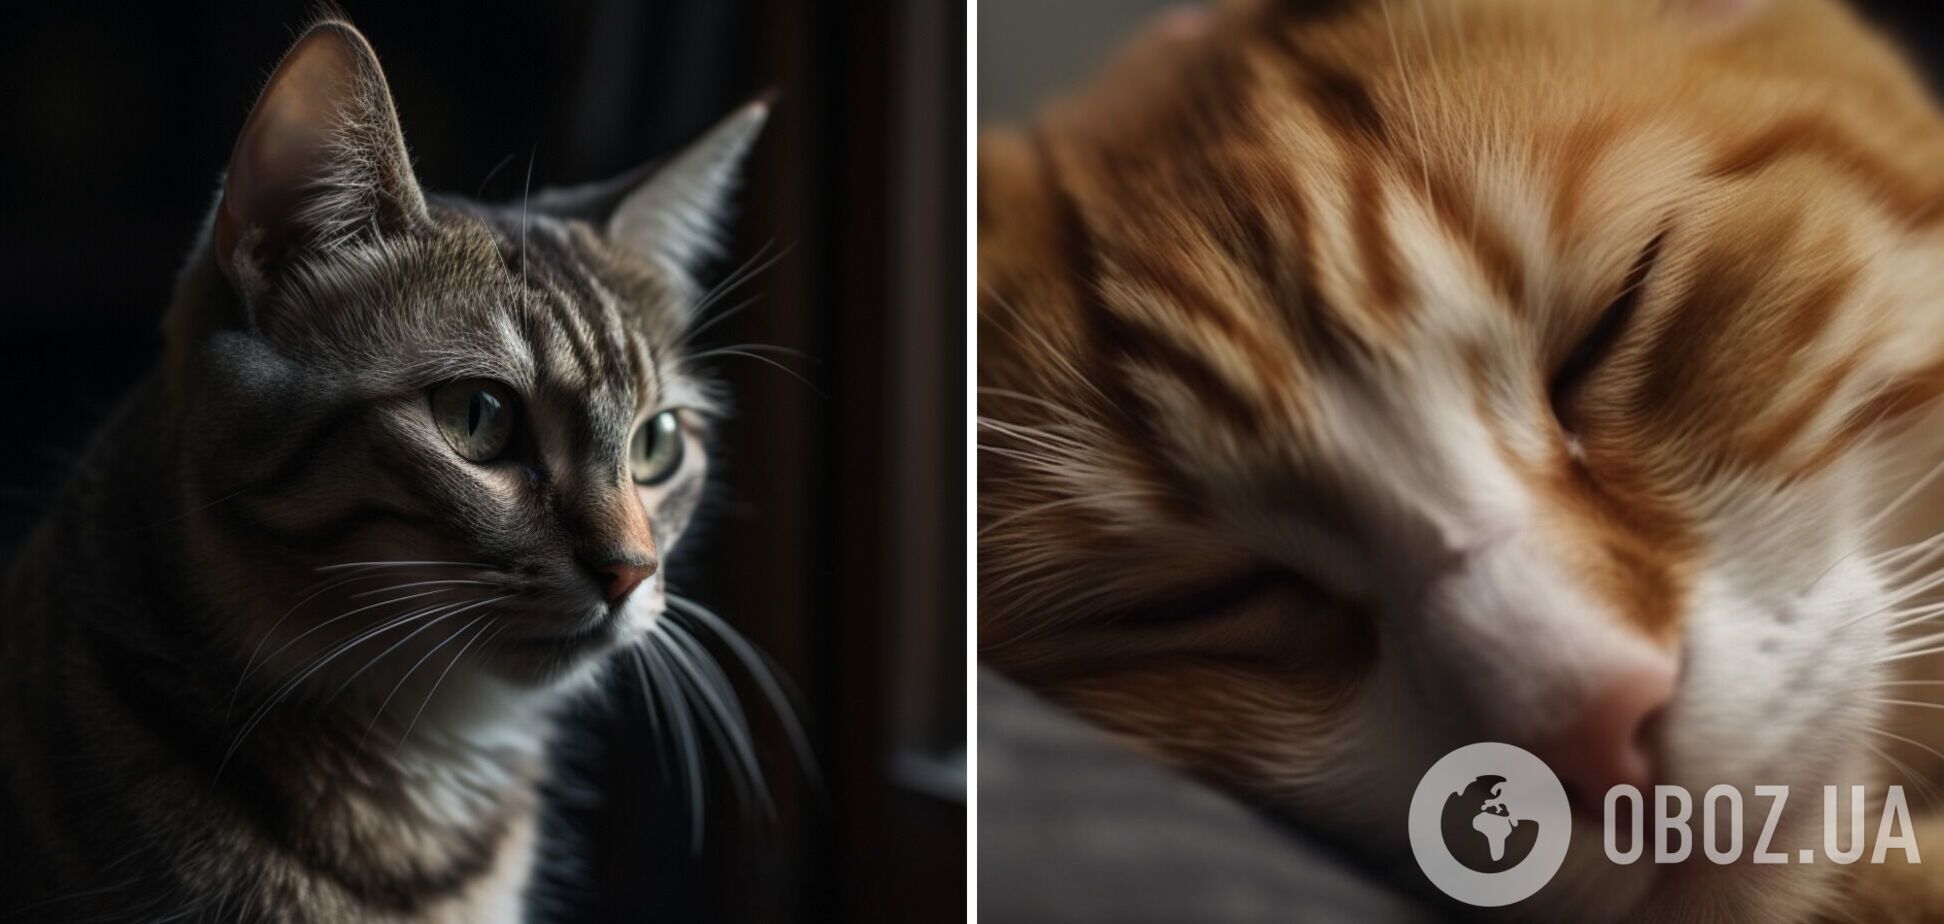 Почему коты мяукают и будят хозяев ночью – объяснение | OBOZ.UA